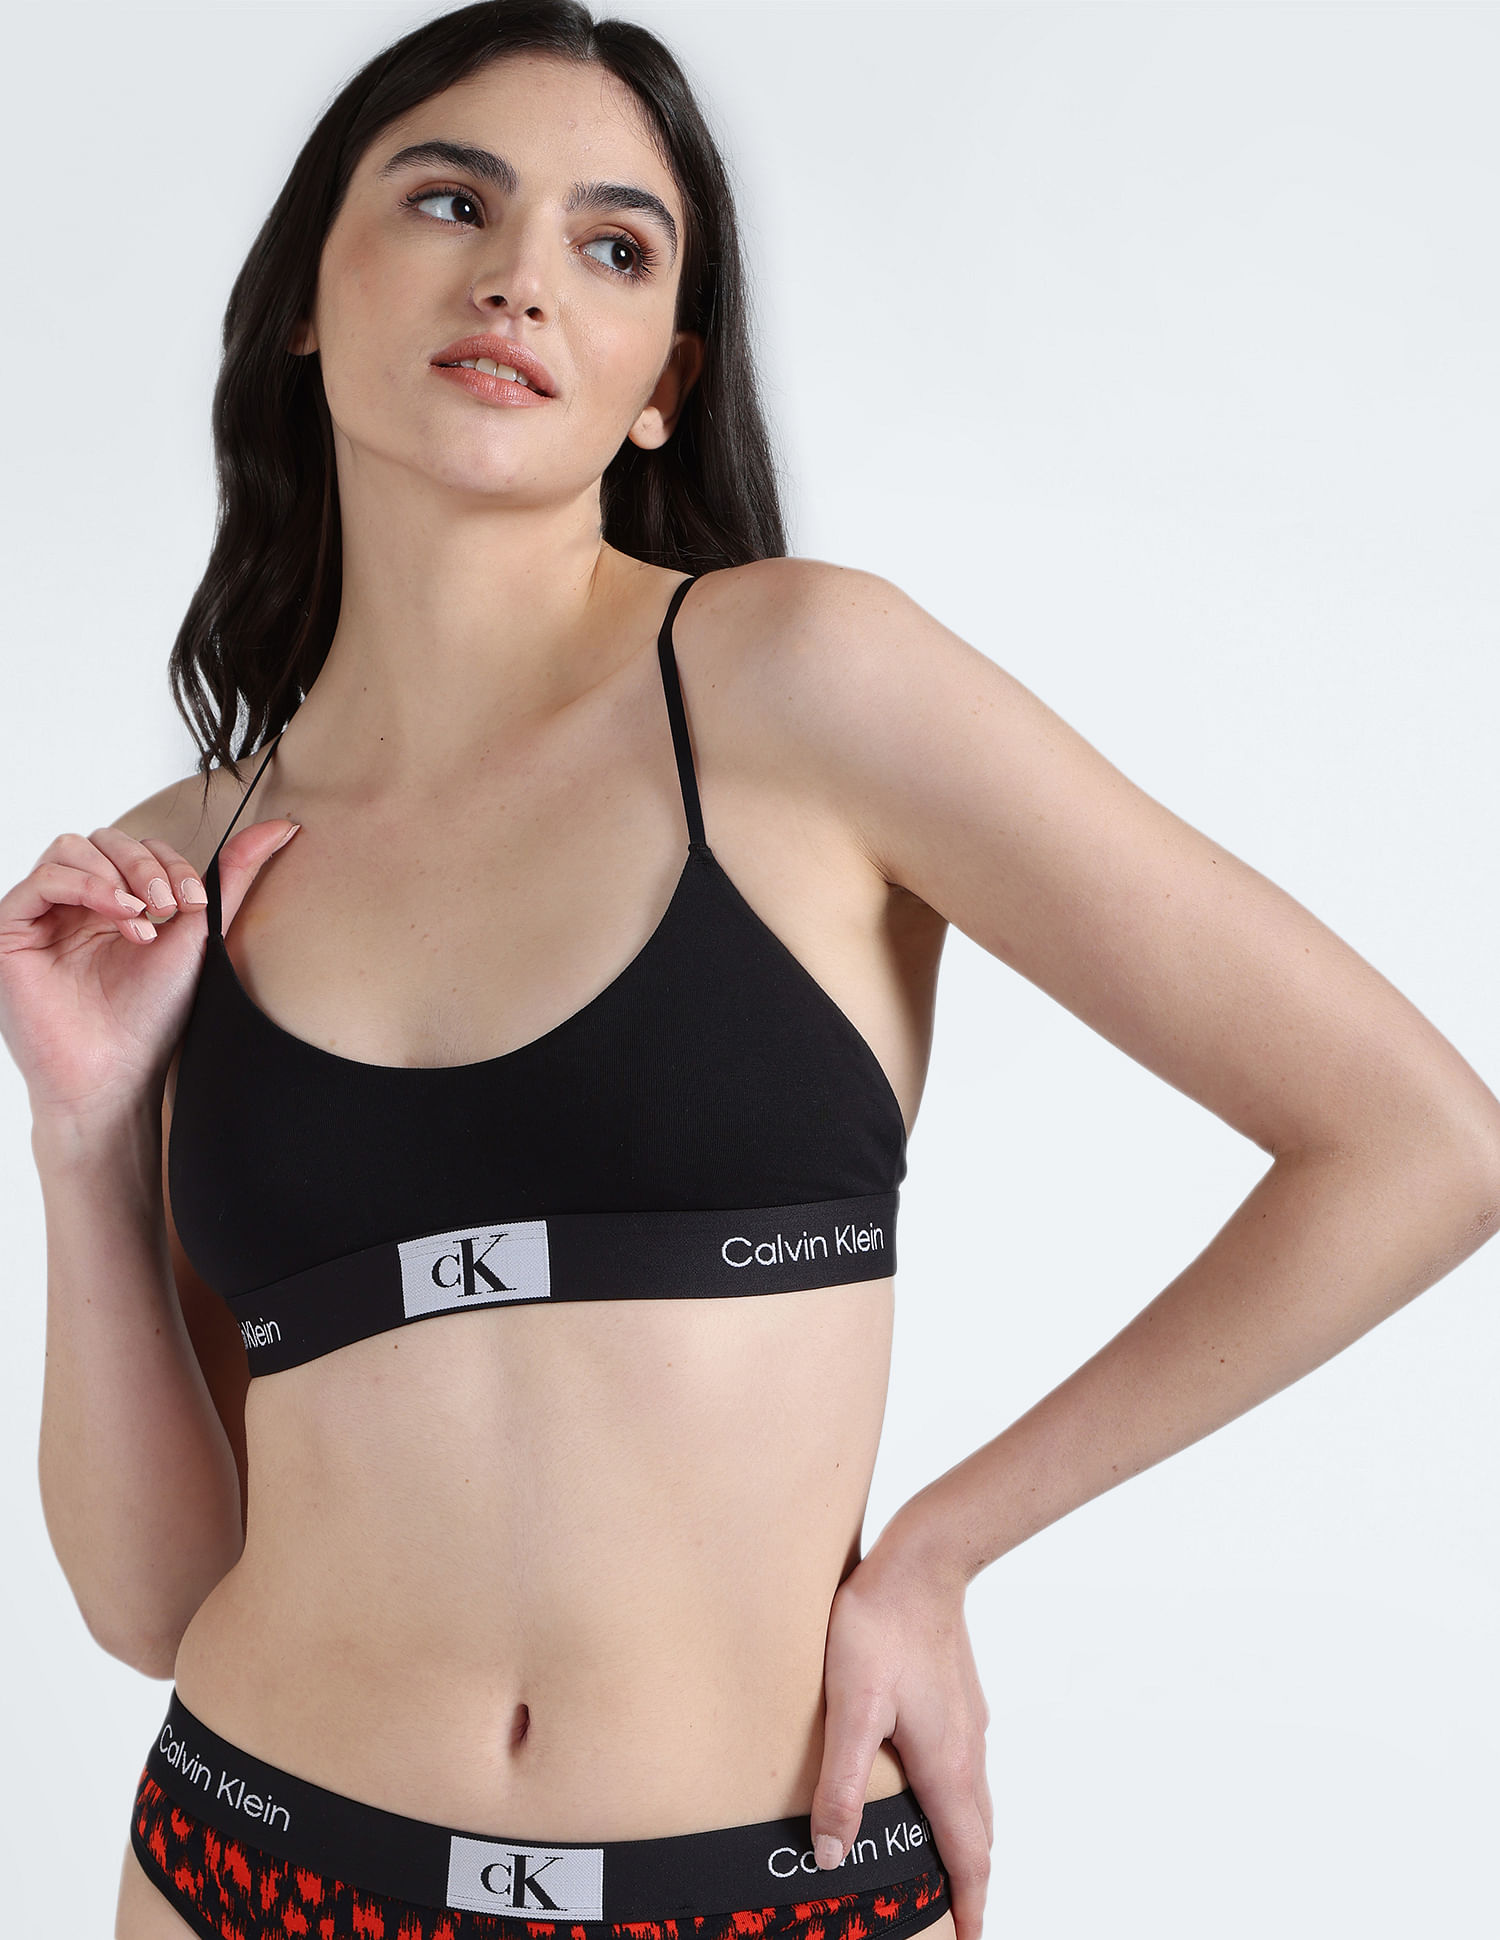 Buy Calvin Klein Underwear Padded Solid Bralette 